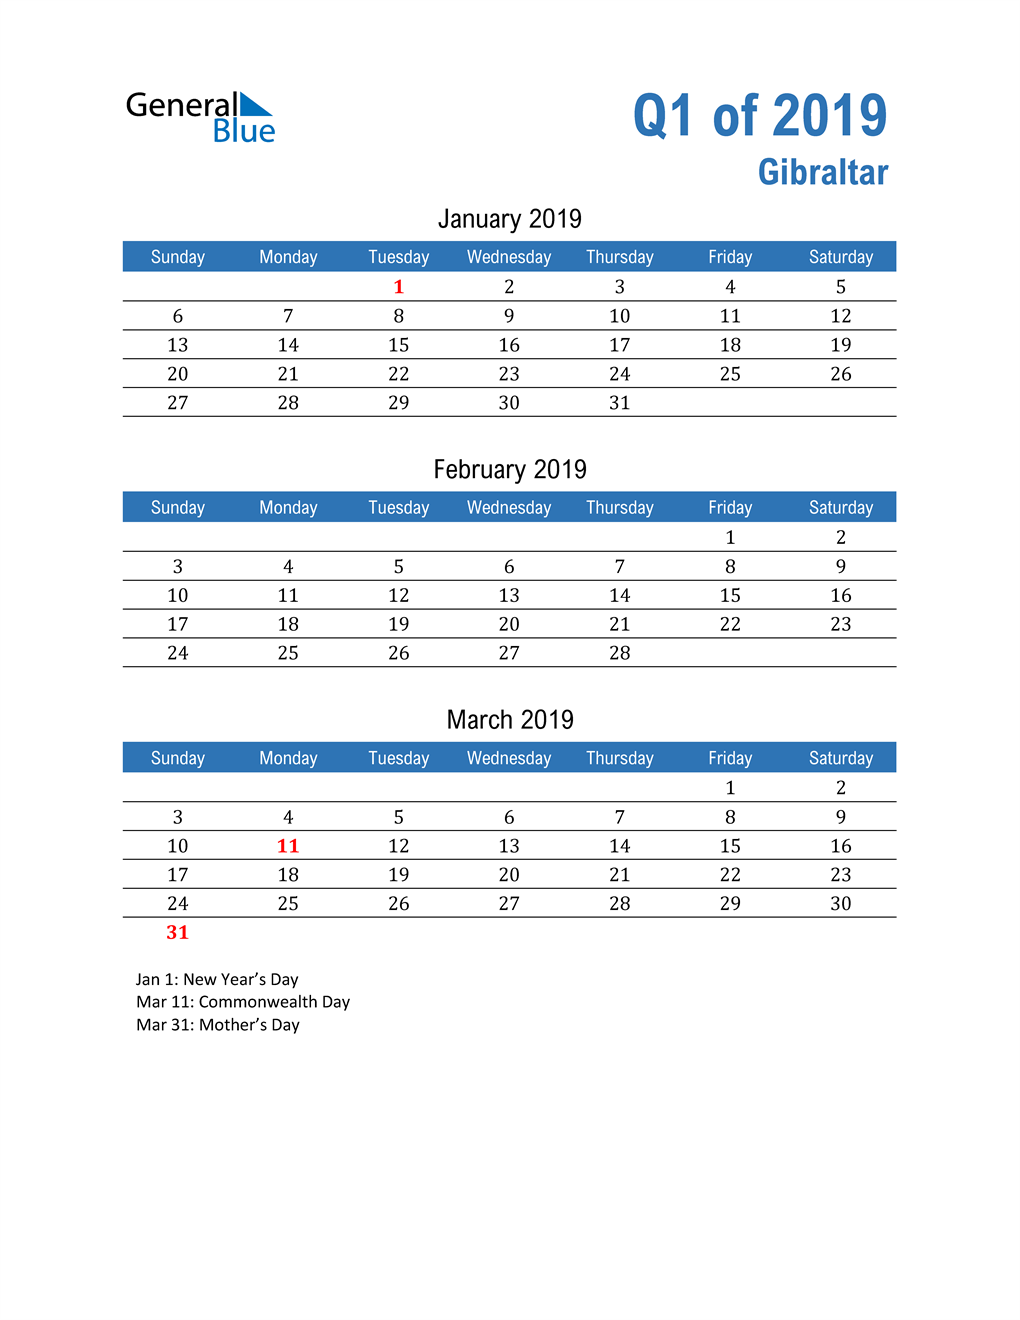  Gibraltar 2019 Quarterly Calendar 